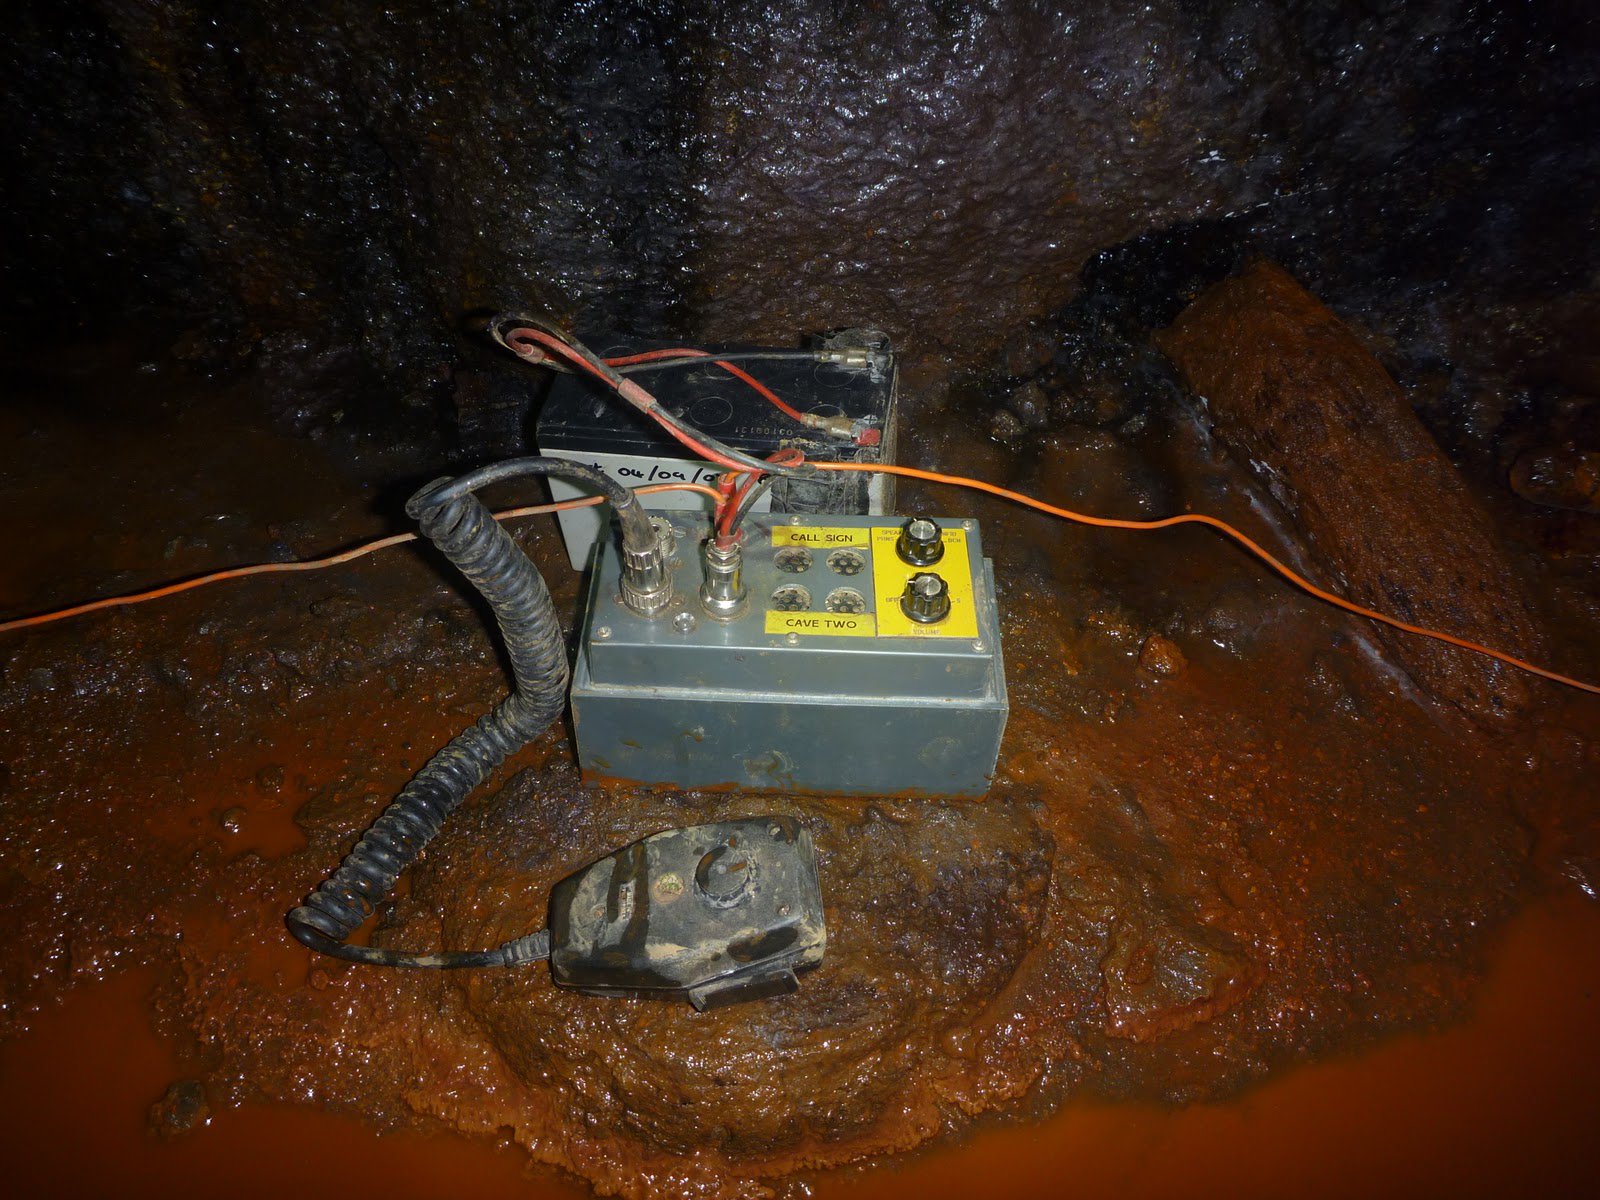 Tay kurtarıcılar kullanılan radyo Heyphone geliştirilen радиолюбителем 2001 yılında